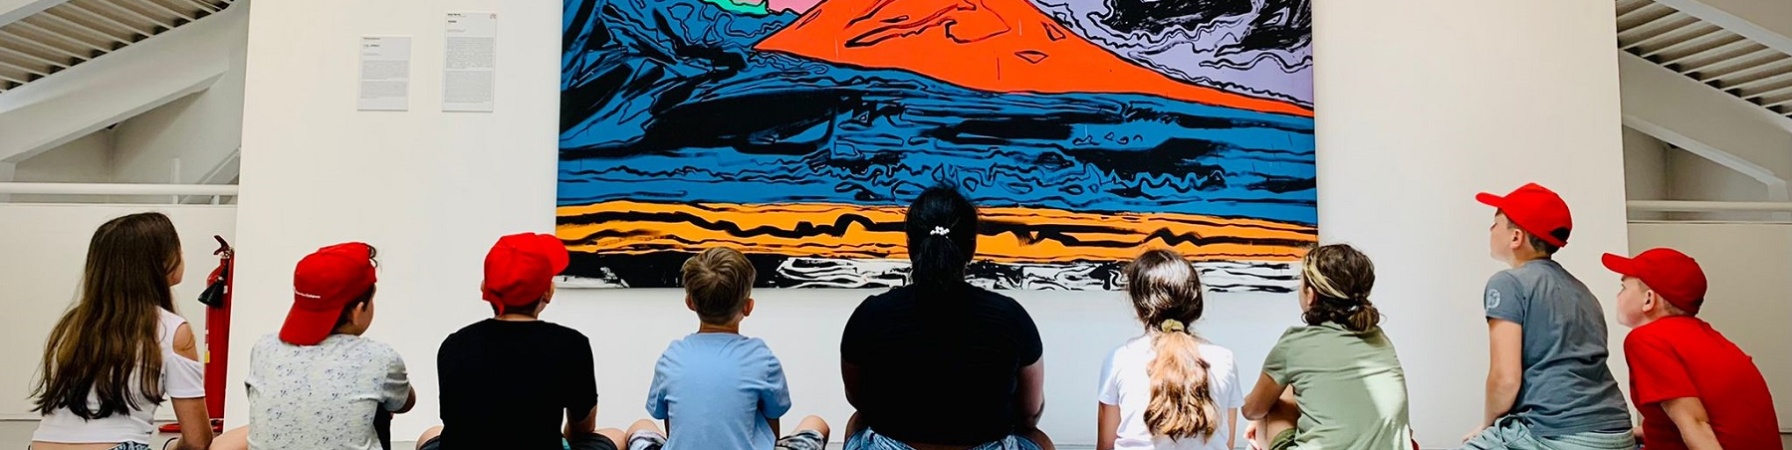 studenti e studentesse seduti a terra mentre guardano un quadro di un vulcano